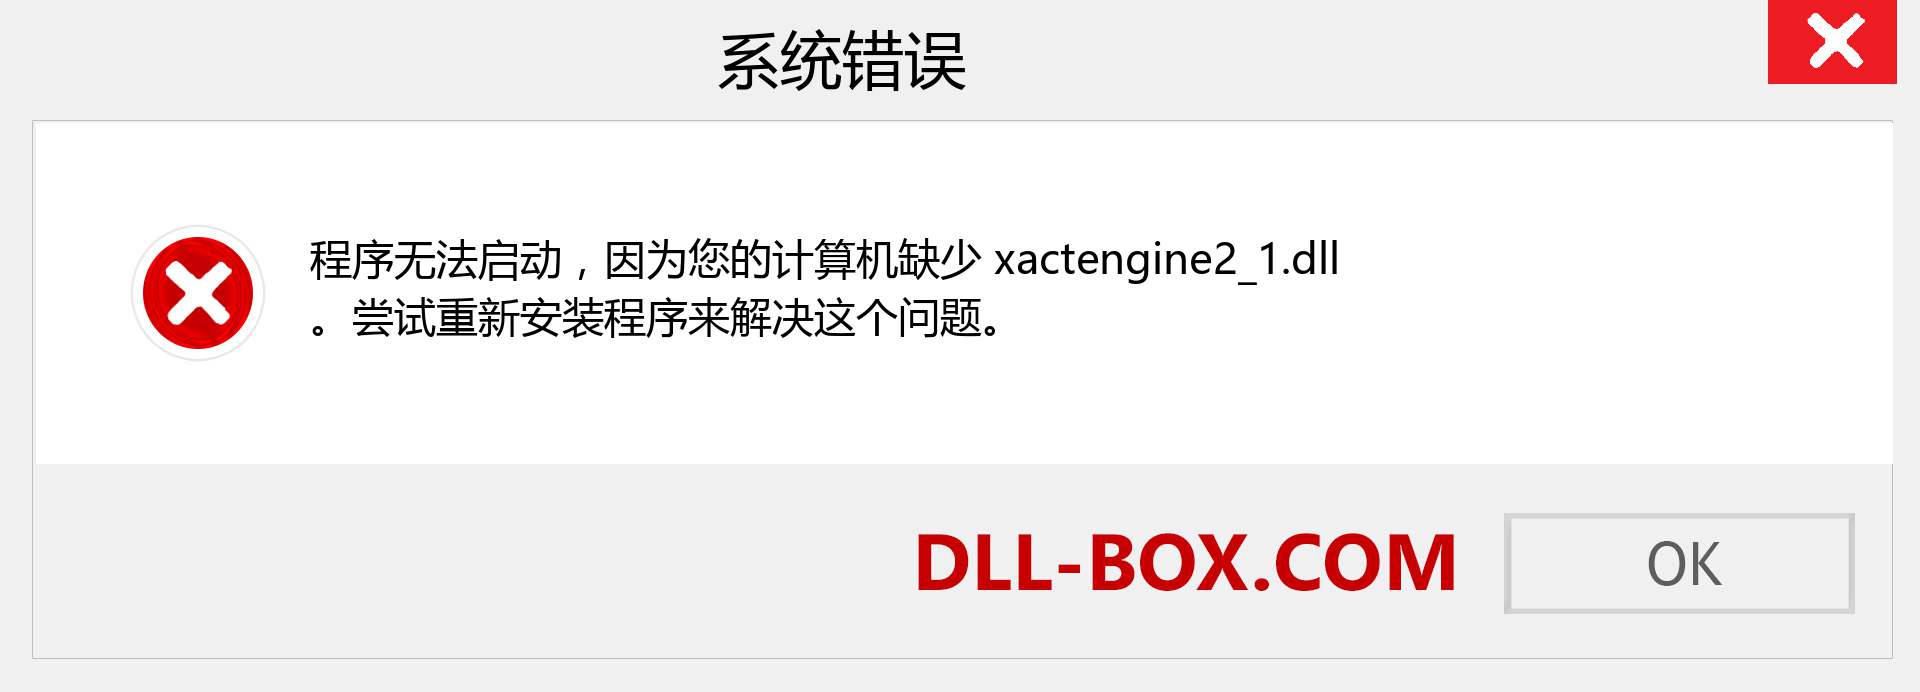 xactengine2_1.dll 文件丢失？。 适用于 Windows 7、8、10 的下载 - 修复 Windows、照片、图像上的 xactengine2_1 dll 丢失错误